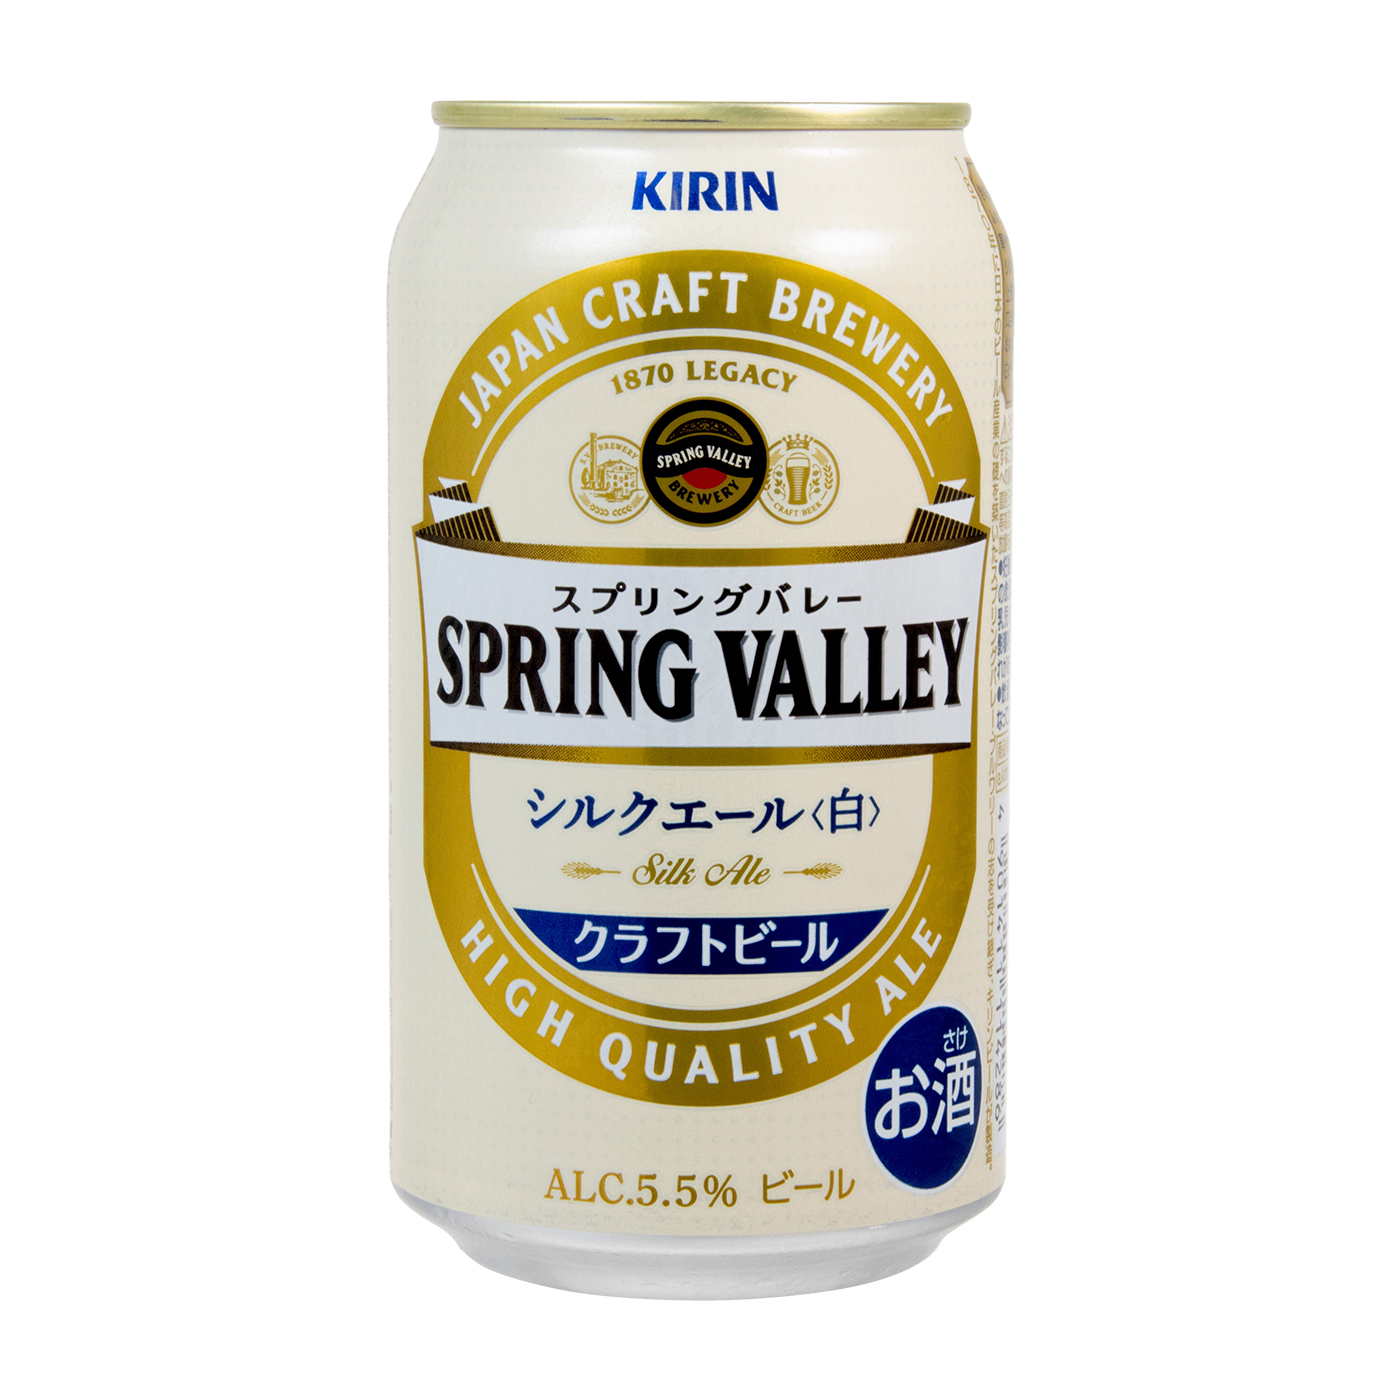 ○シンハービール 缶 330ml 24本×2ケース 計48本 - ビール・発泡酒